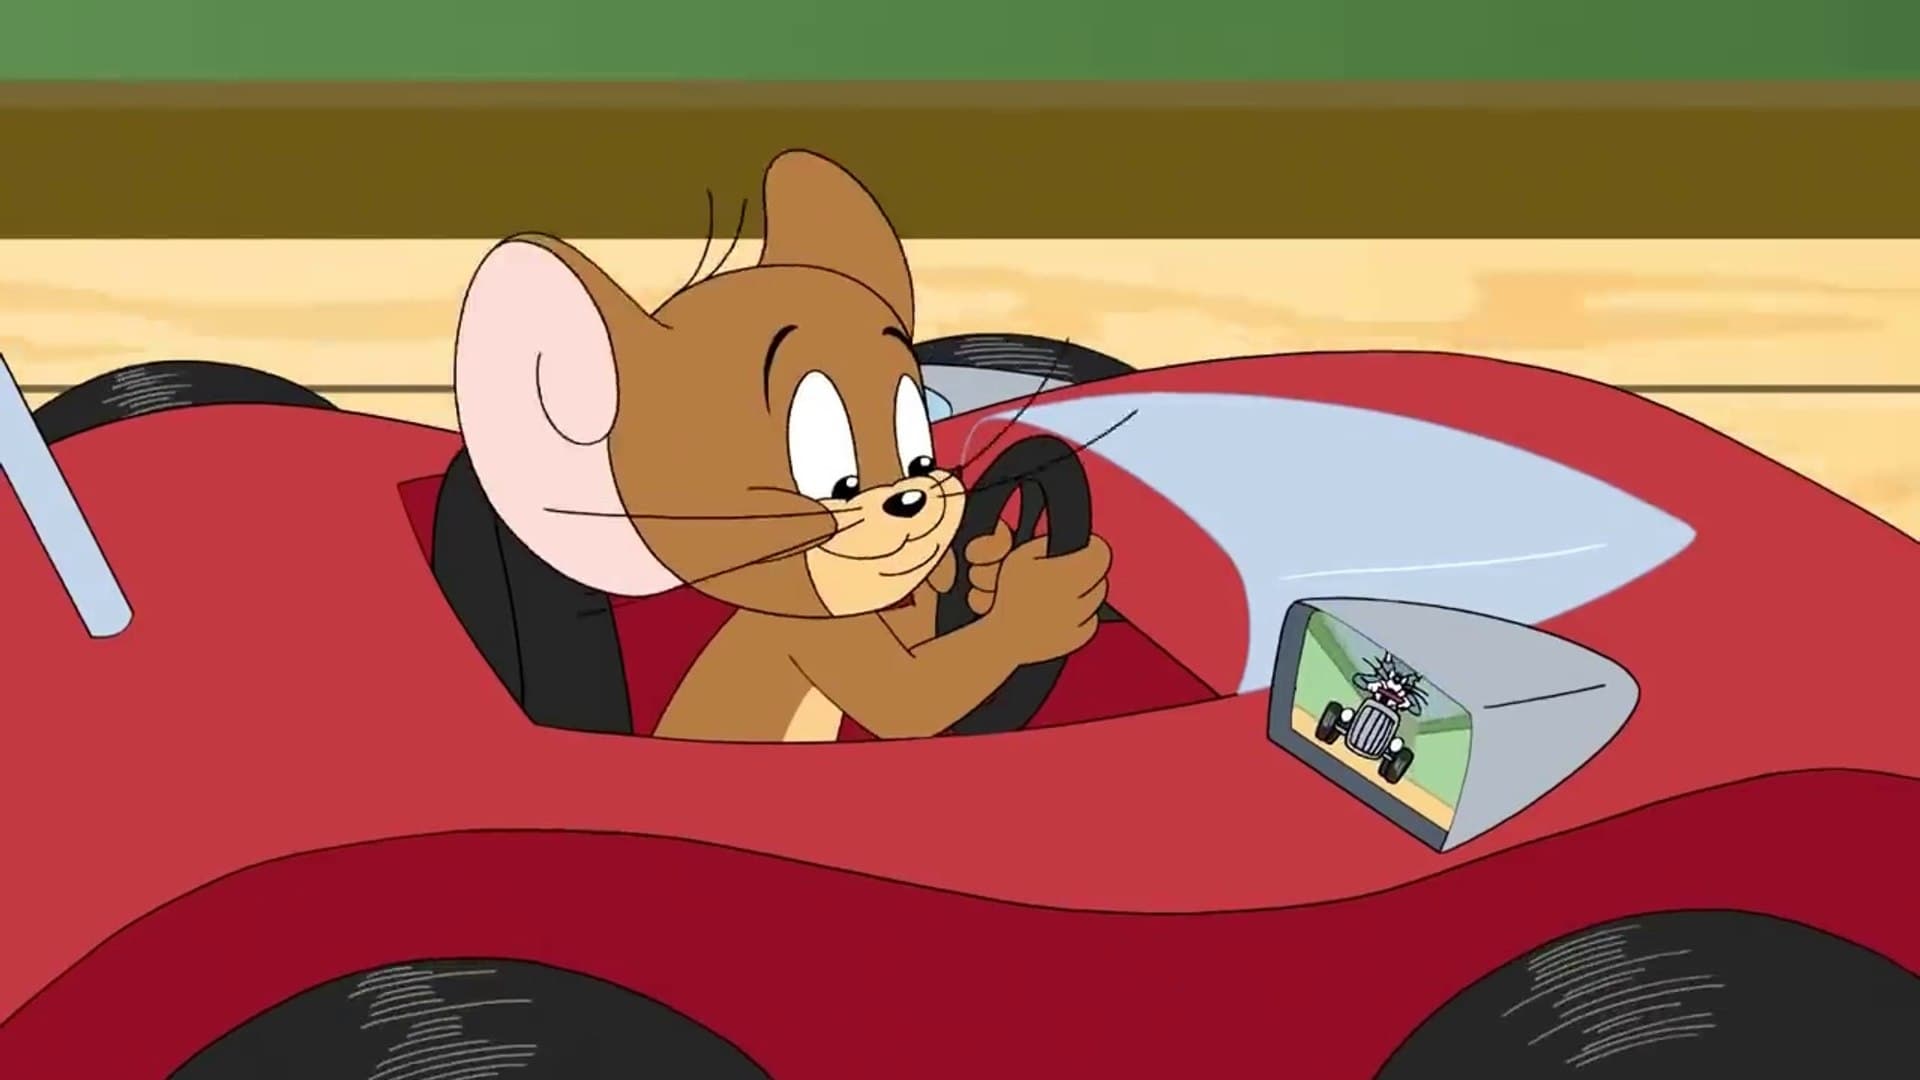 Xem Phim Tom và Jerry: Quá Nhanh Quá Nguy Hiểm (Tom and Jerry: The Fast and the Furry)